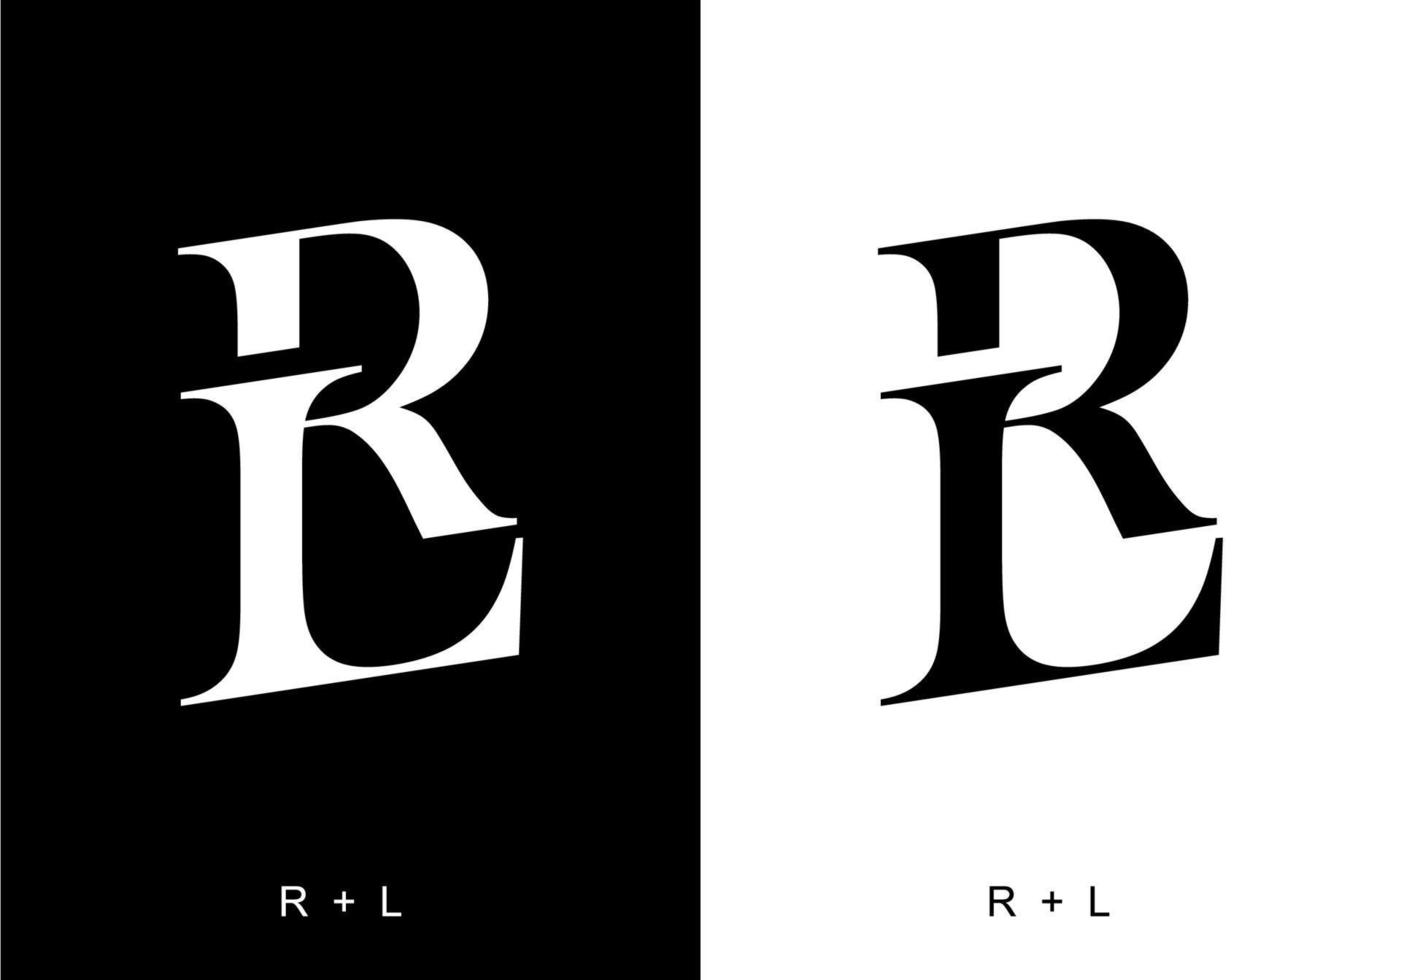 couleur noir et blanc de la lettre initiale rl vecteur